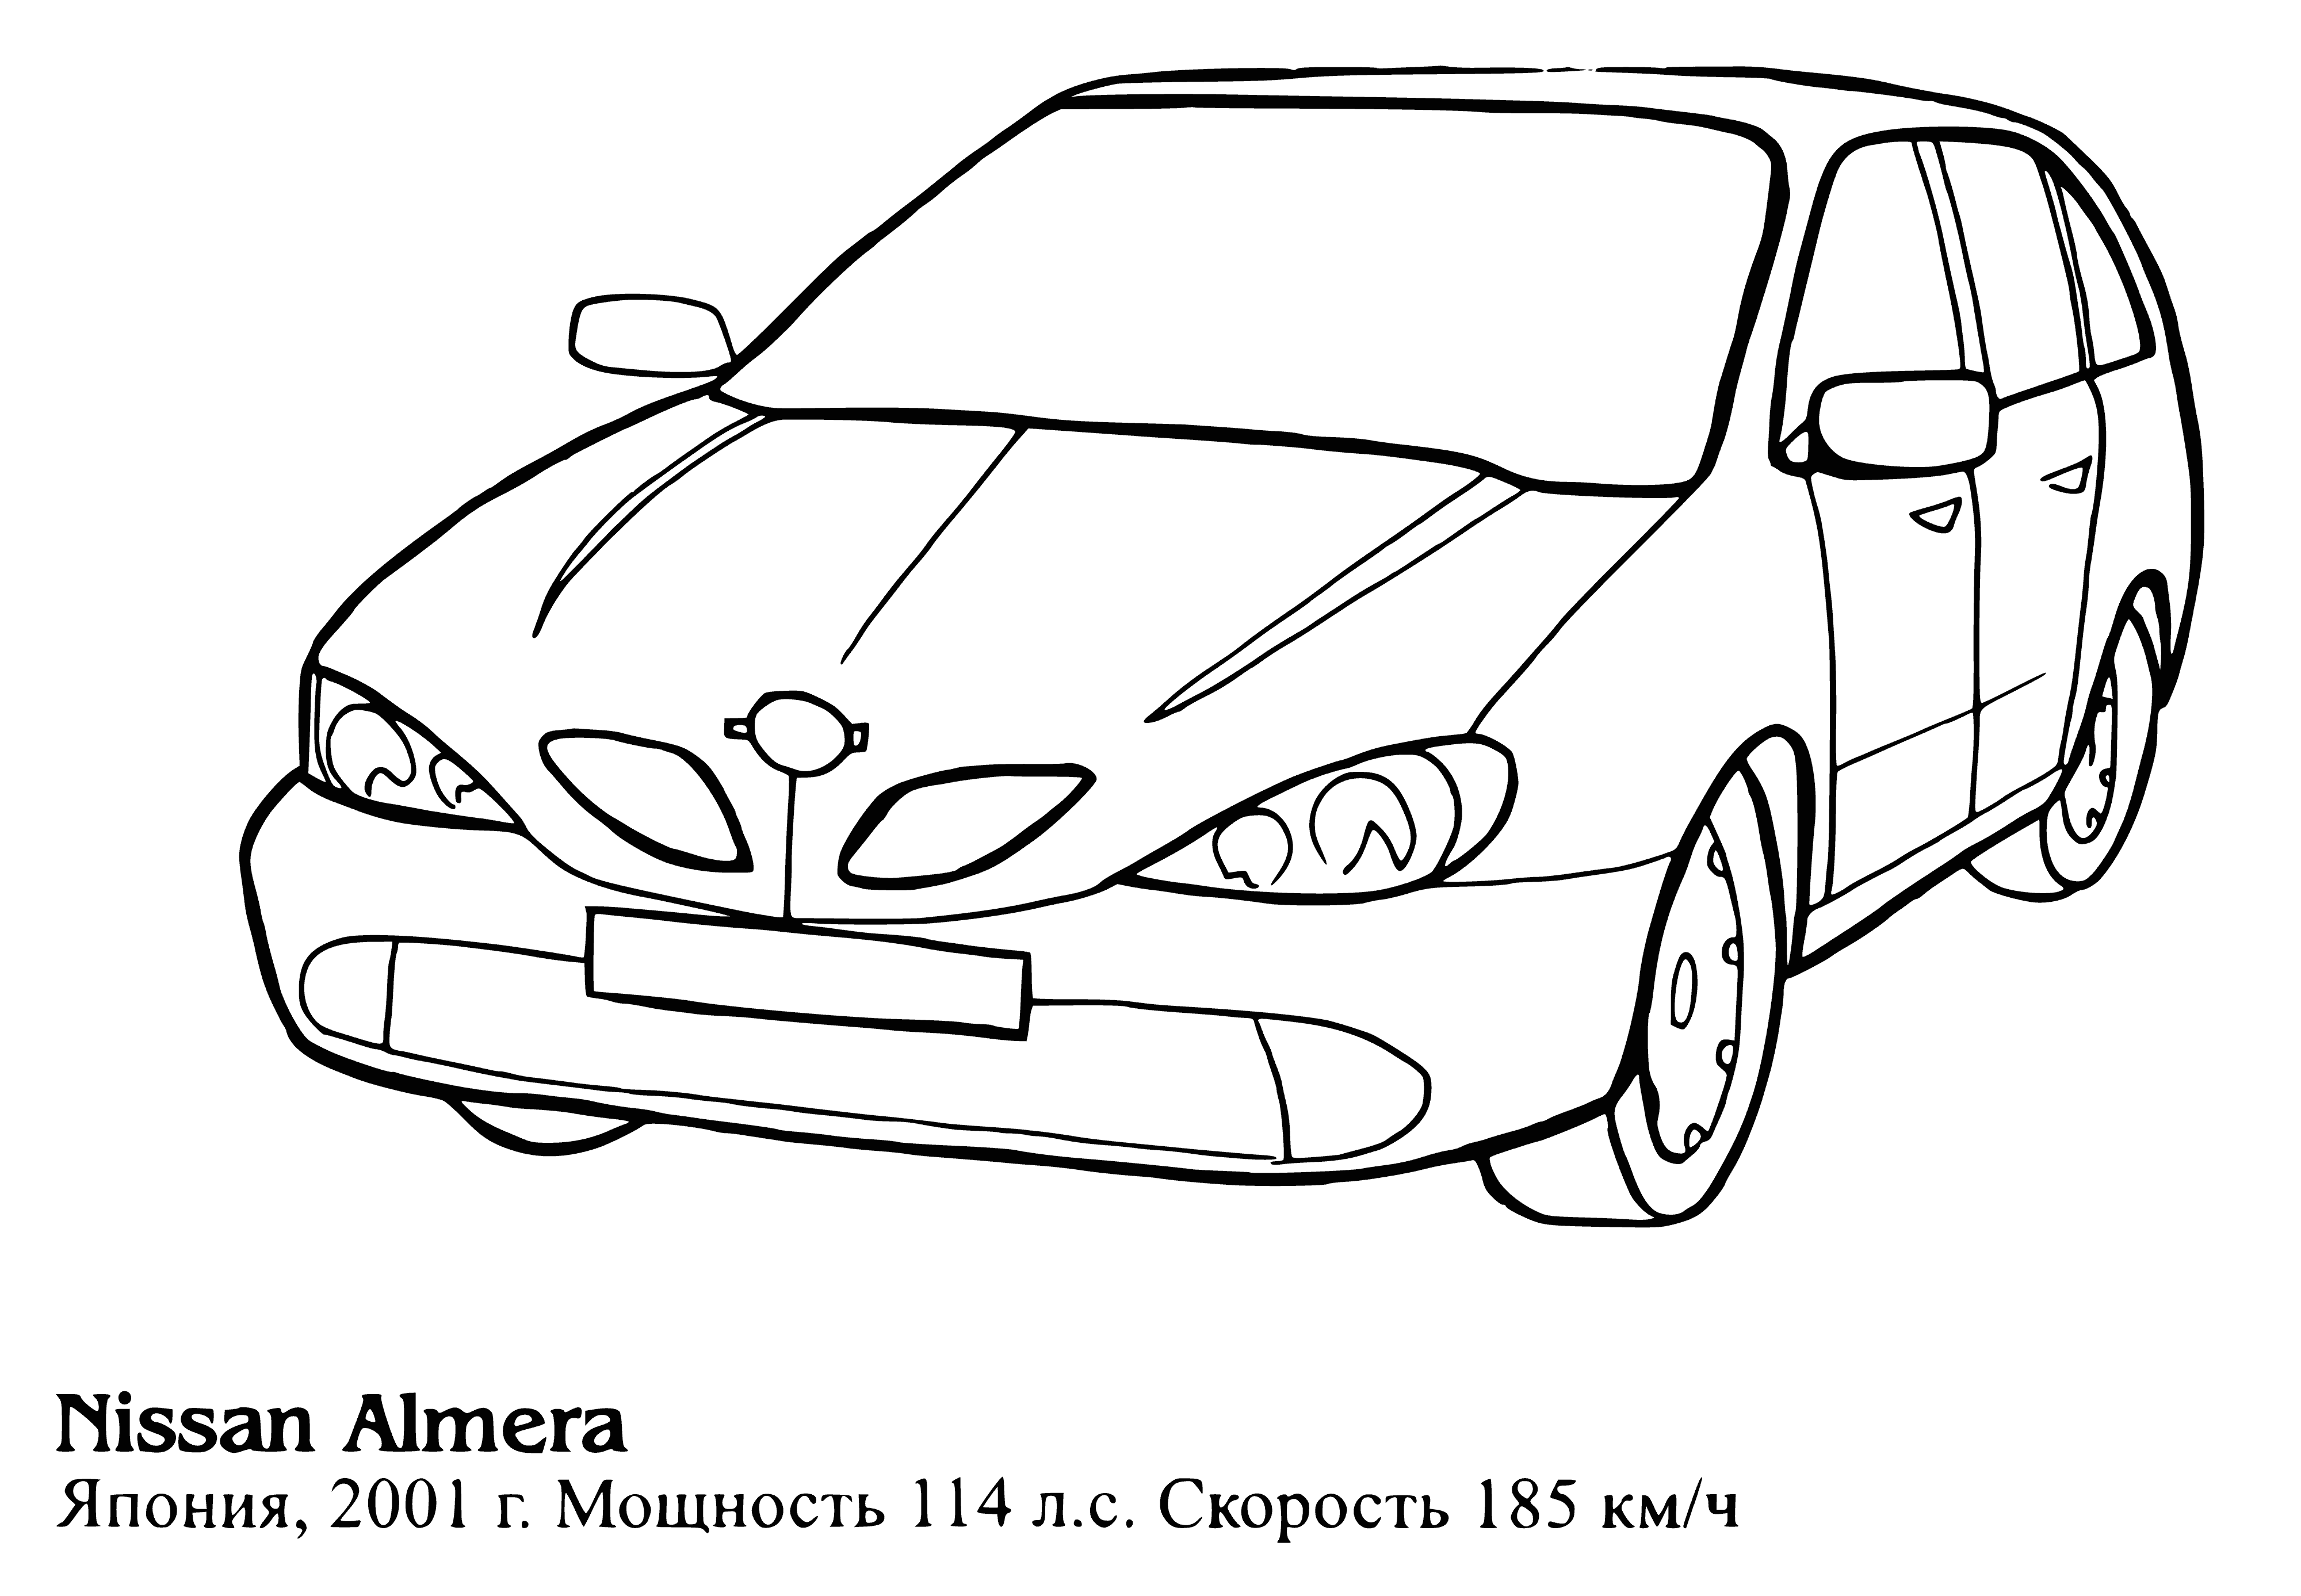 Nissan Almera coloring page